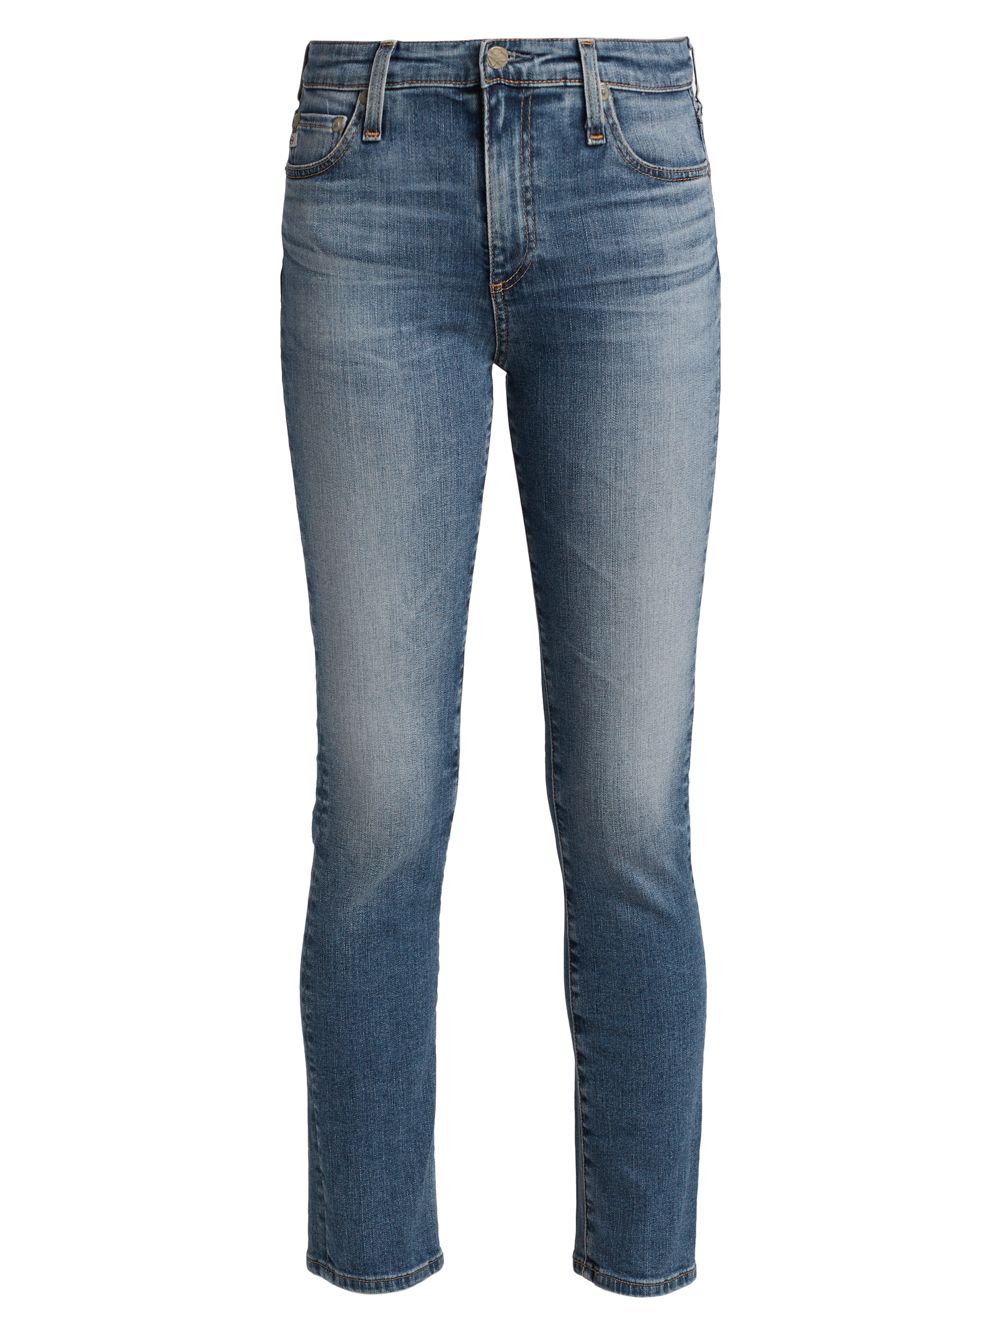 Эластичные прямые джинсы Mari с высокой посадкой AG Jeans